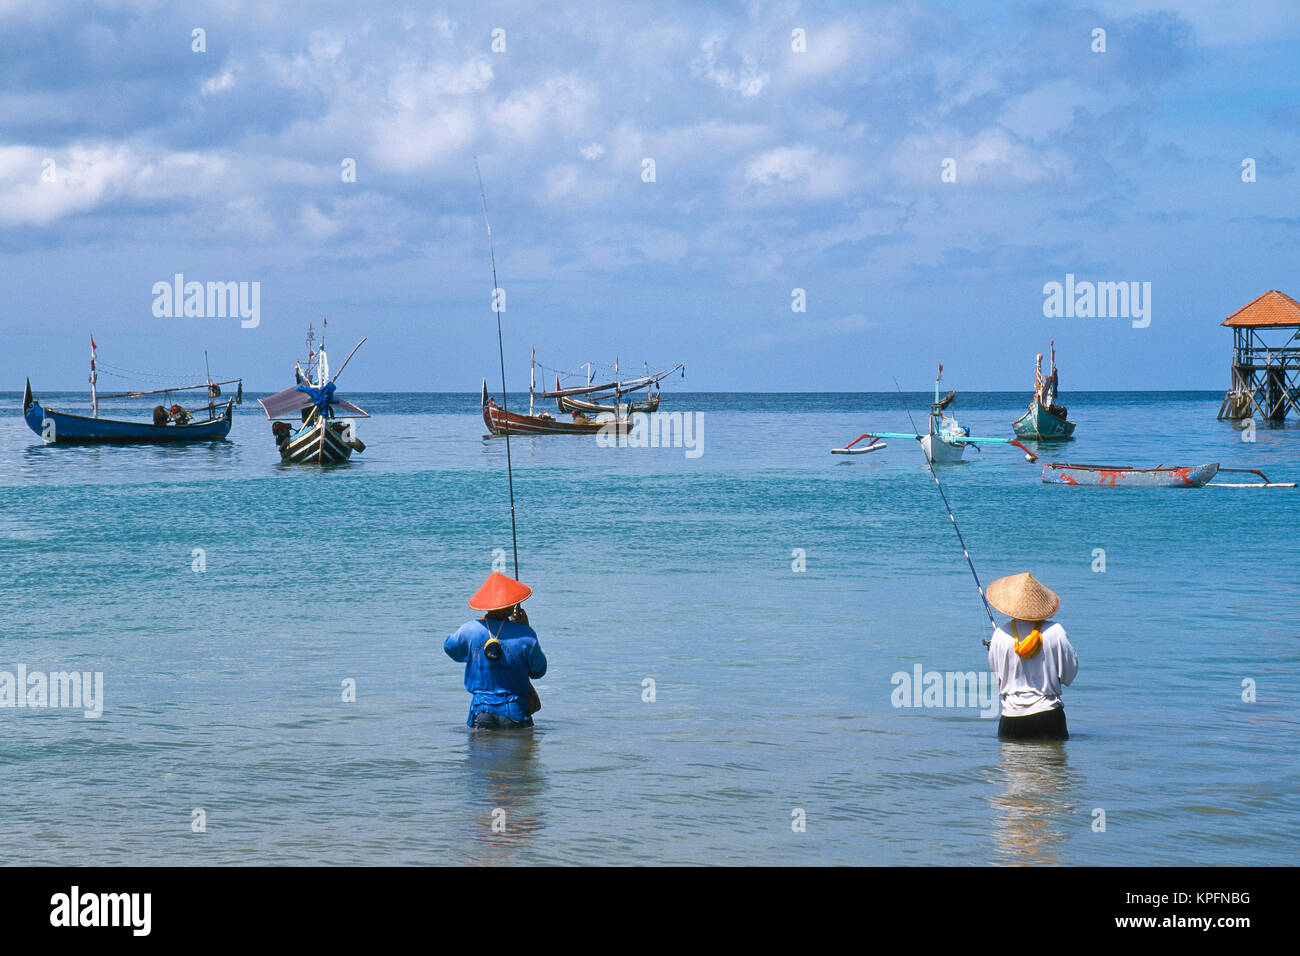 Asia Indonesia Bali Jimbaran, villaggio di pescatori. Pesca Balinese con colorati jukungs (buttafuori) in background. Foto Stock